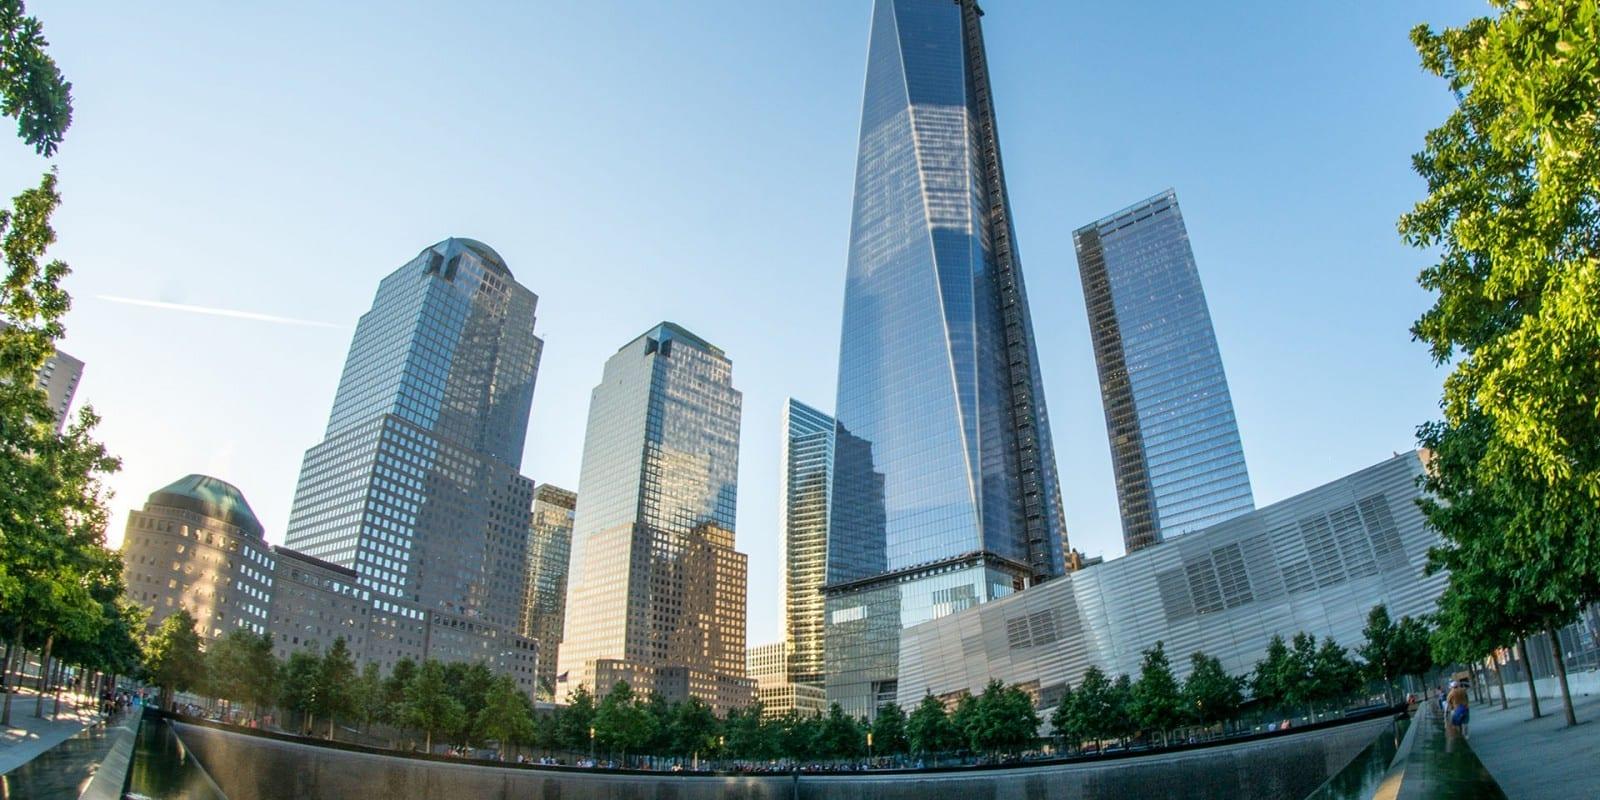 USA - One World Trade Center